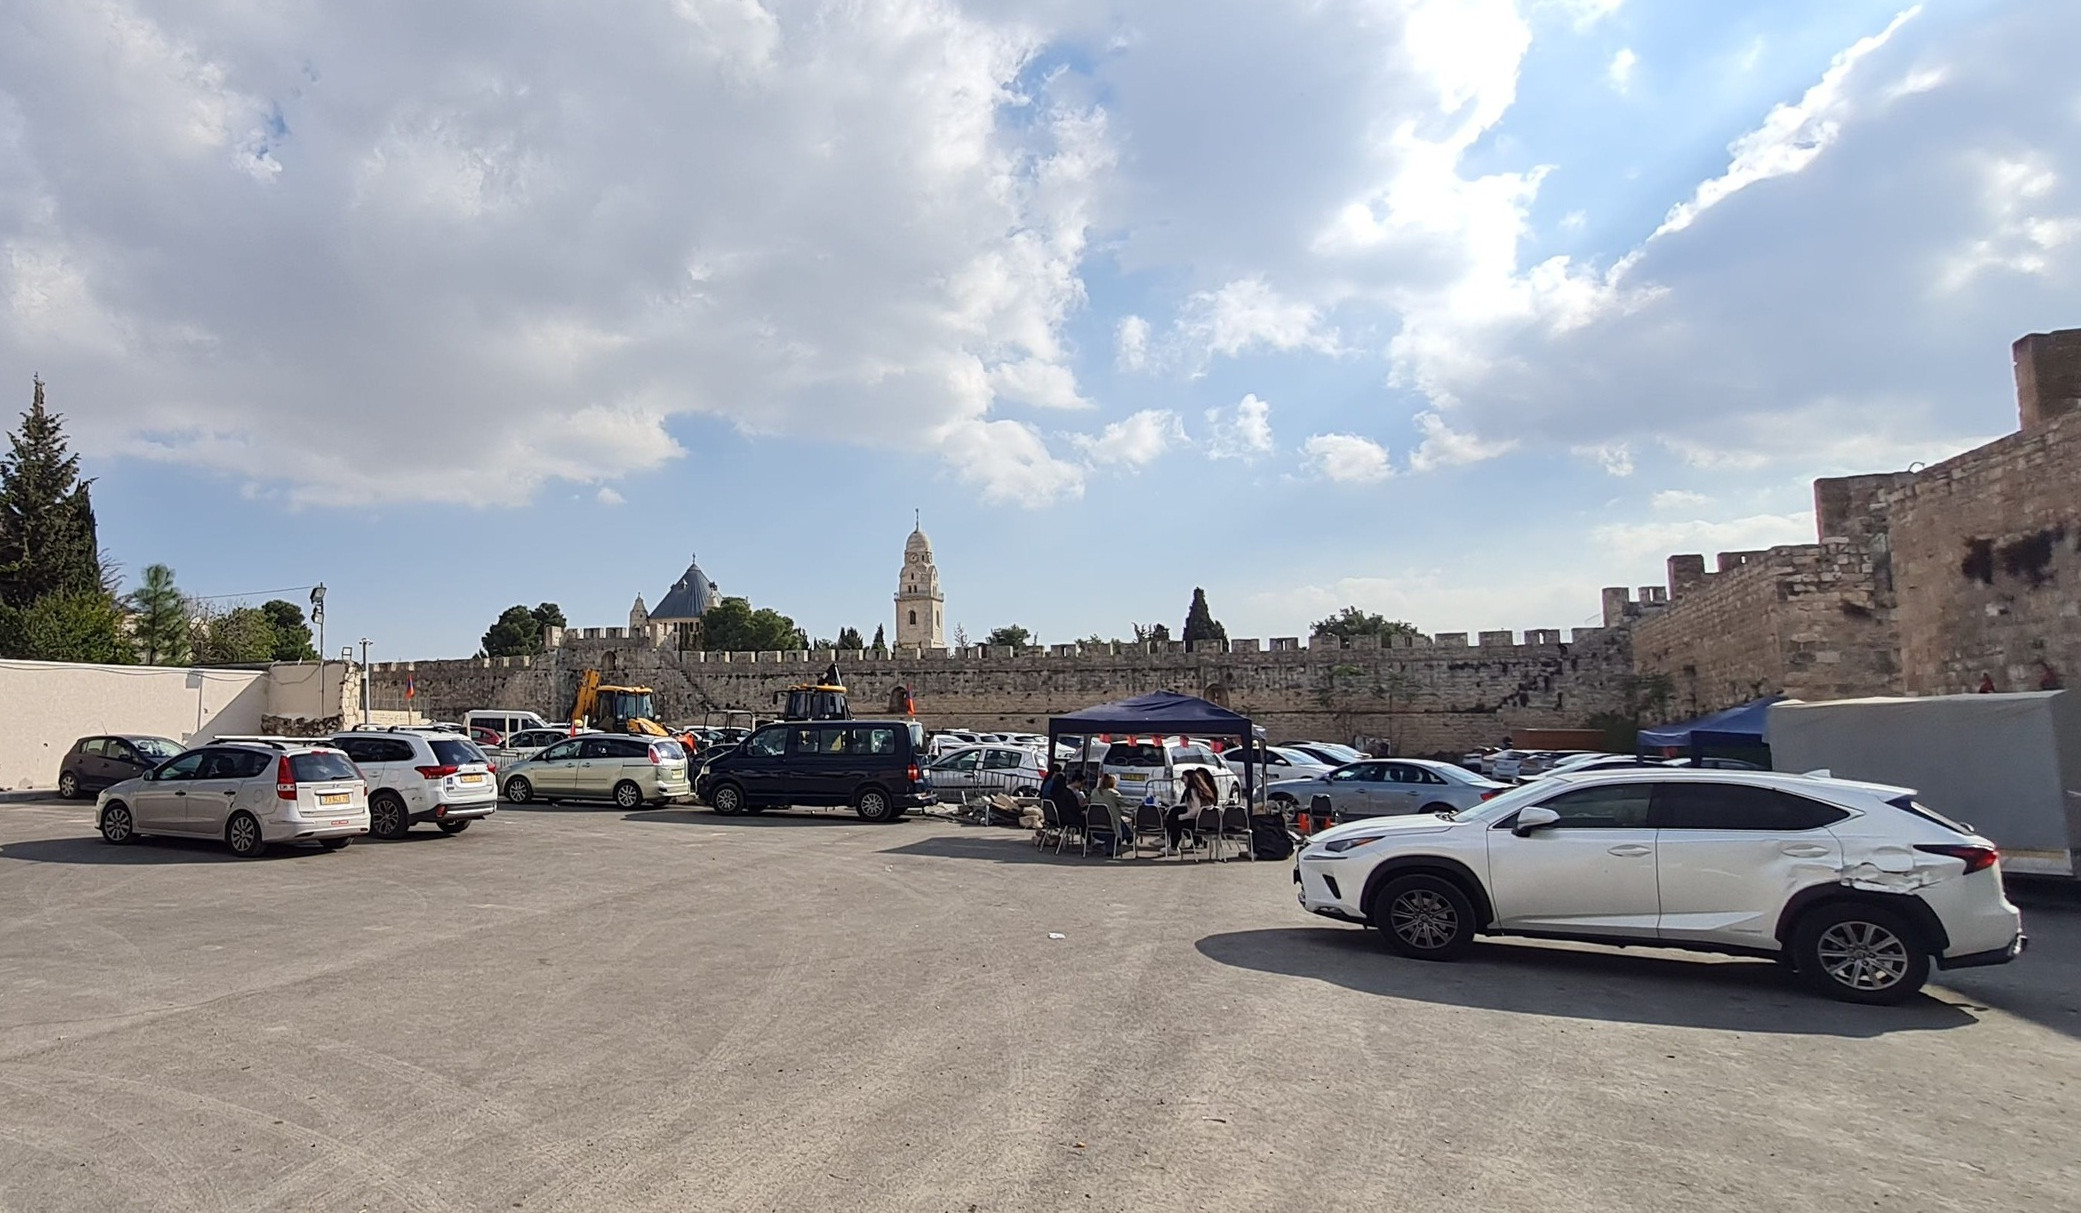 Երուսաղեմի հայկական համայնքի վրա հարձակումից հետո ոստիկանությունը երկու հայ երիտասարդի է ձերբակալել. Արտյոմ Չերնամորյան